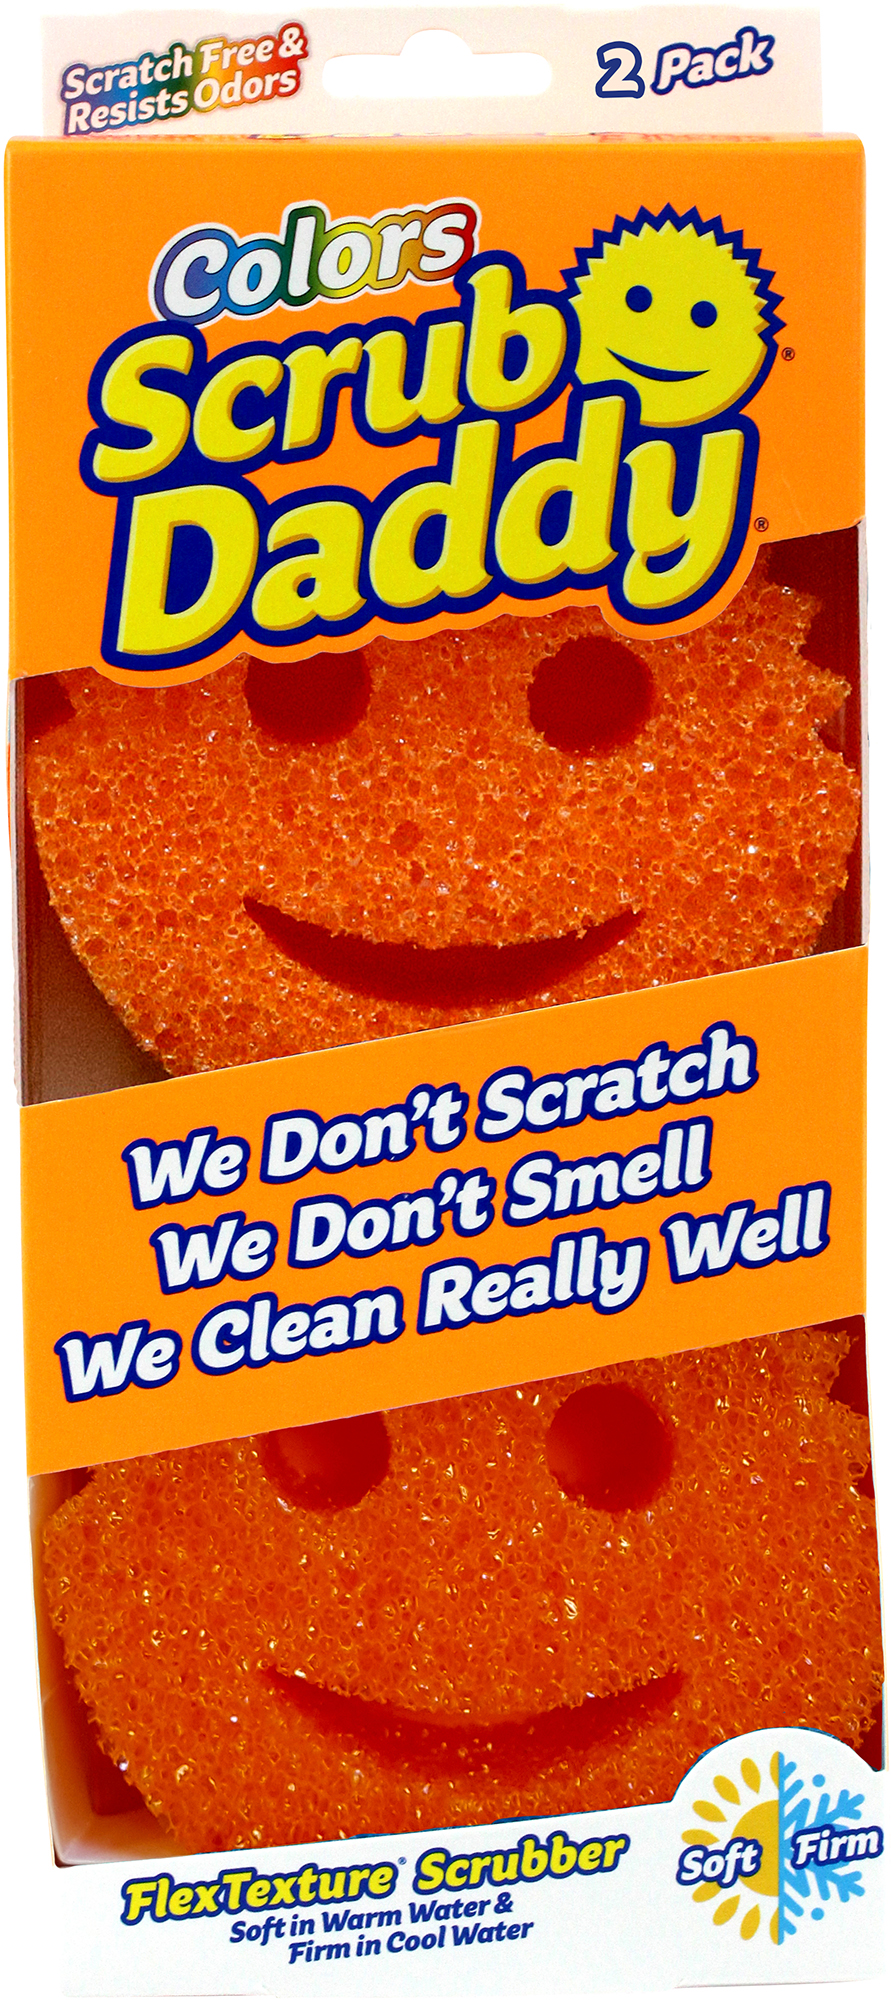 Scrub Daddy Colors FlexTexture Sponges